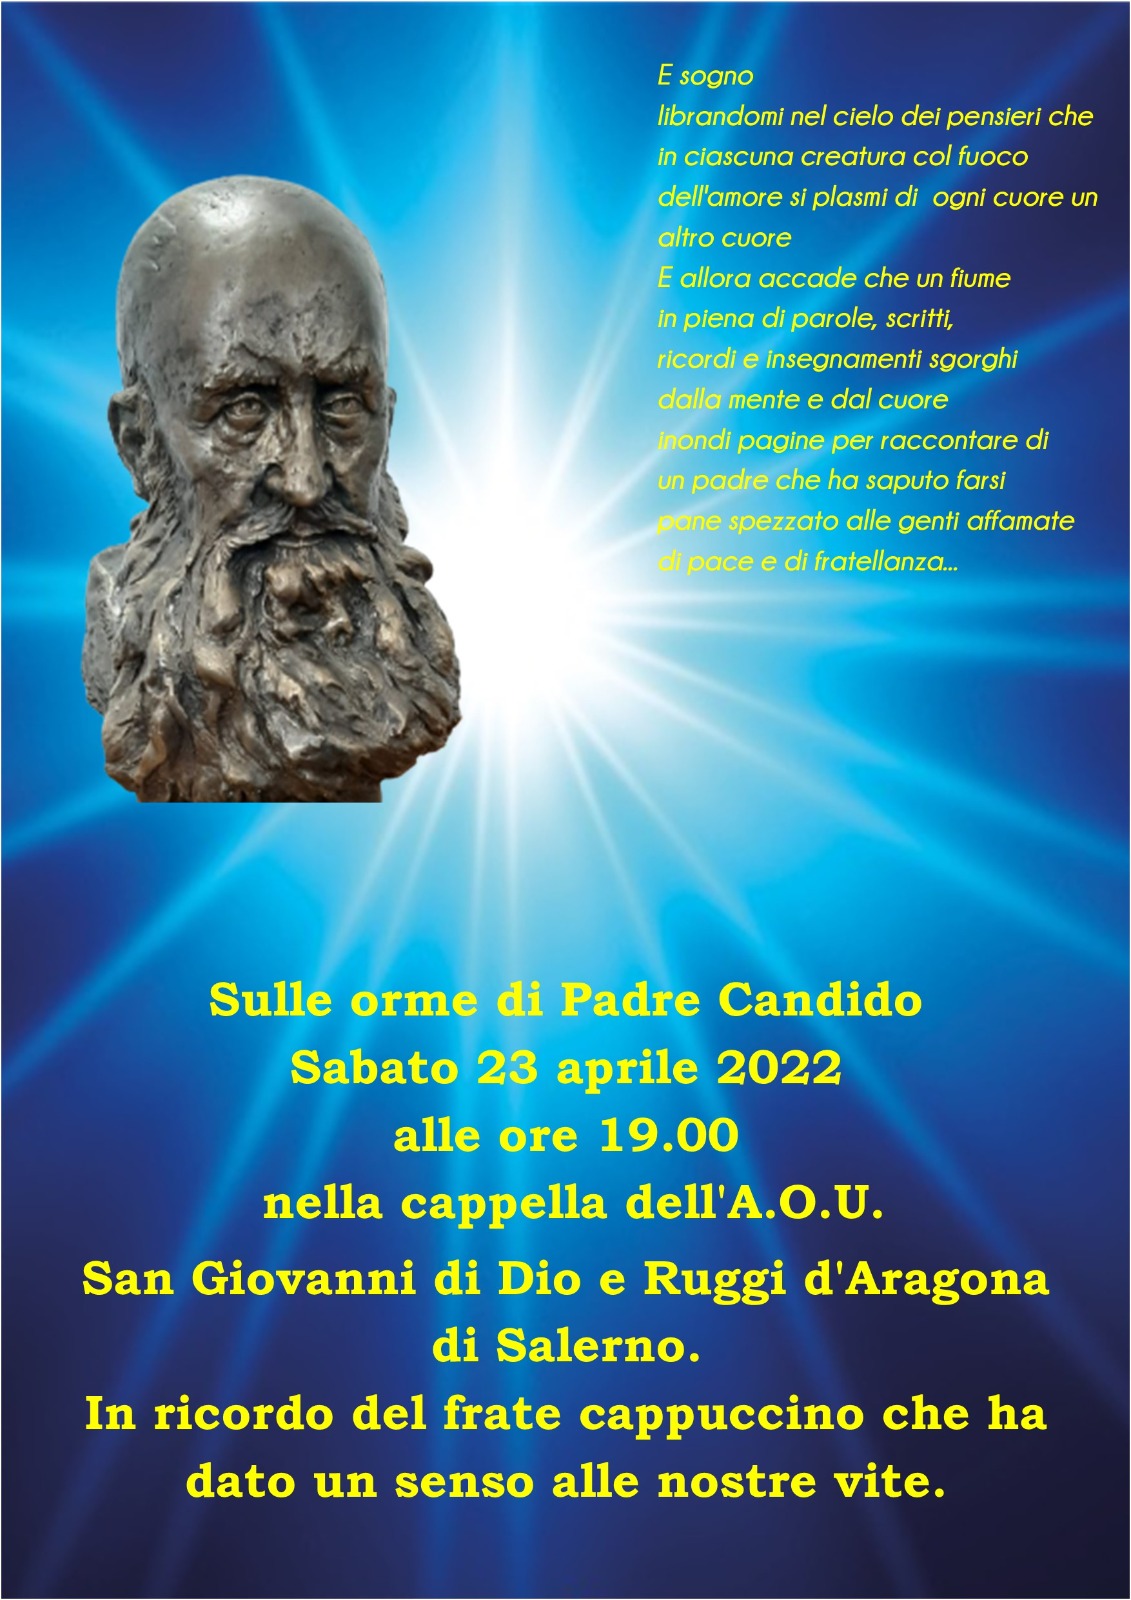 Salerno: all’AOU “San Giovanni di Dio e Ruggi d’Aragona”, inaugurazione busto di bronzo di Mastroberti a Padre Candido Gallo